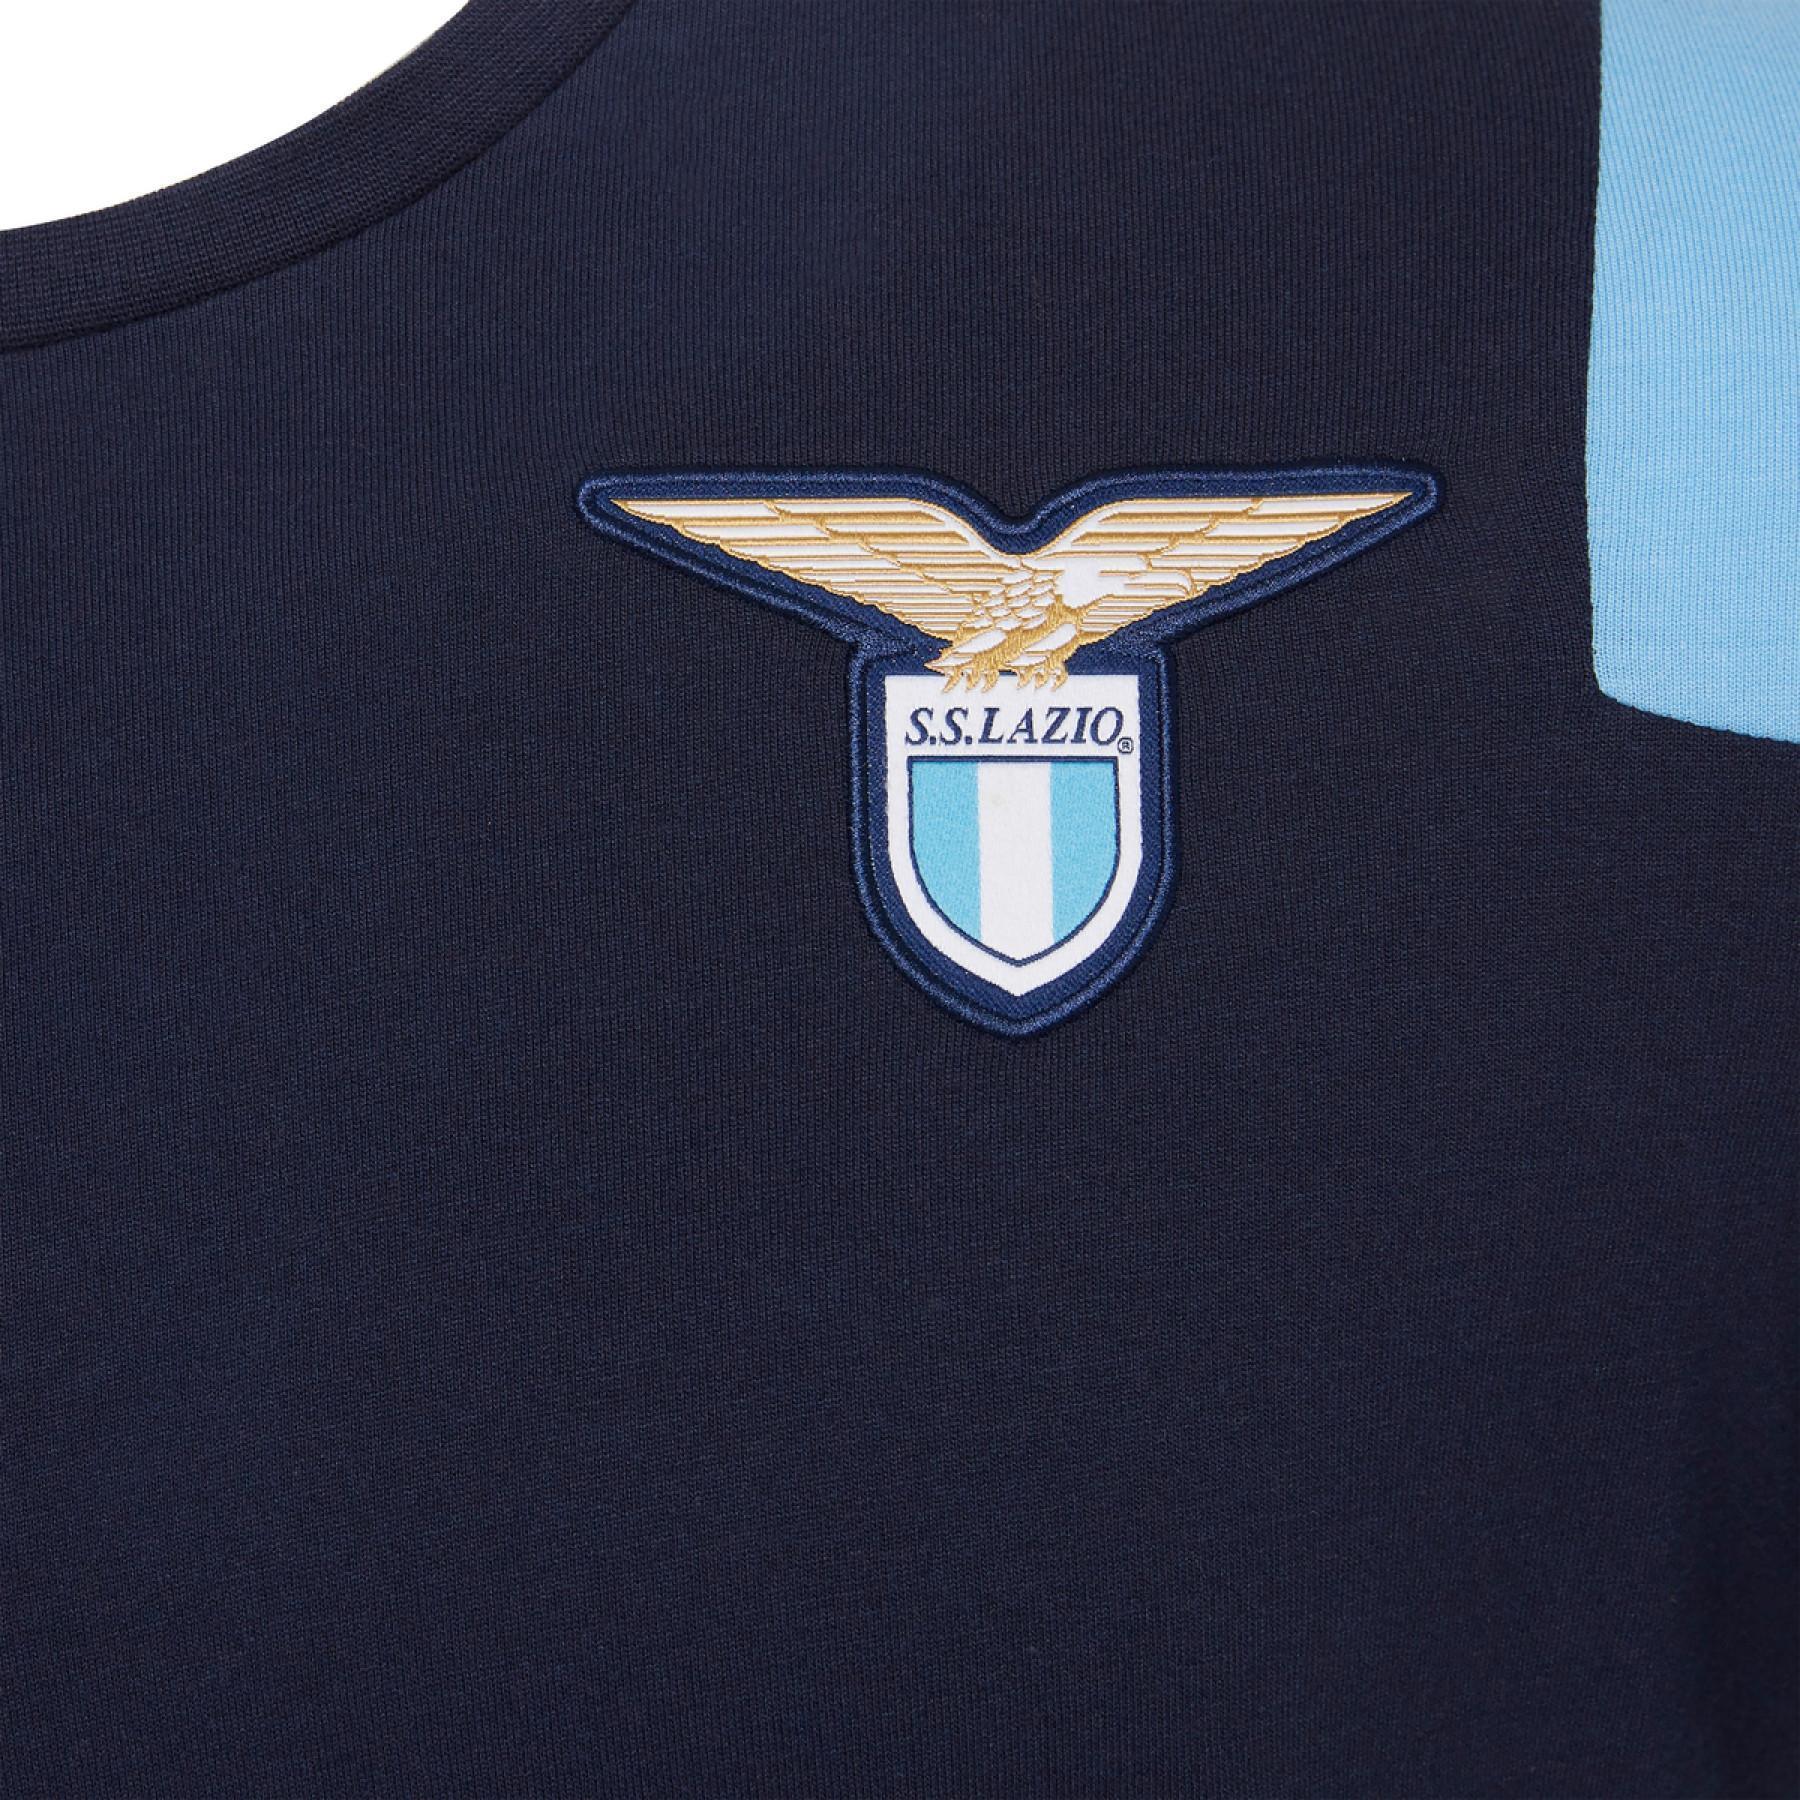 T-shirt Lazio Rome coton 2020/21